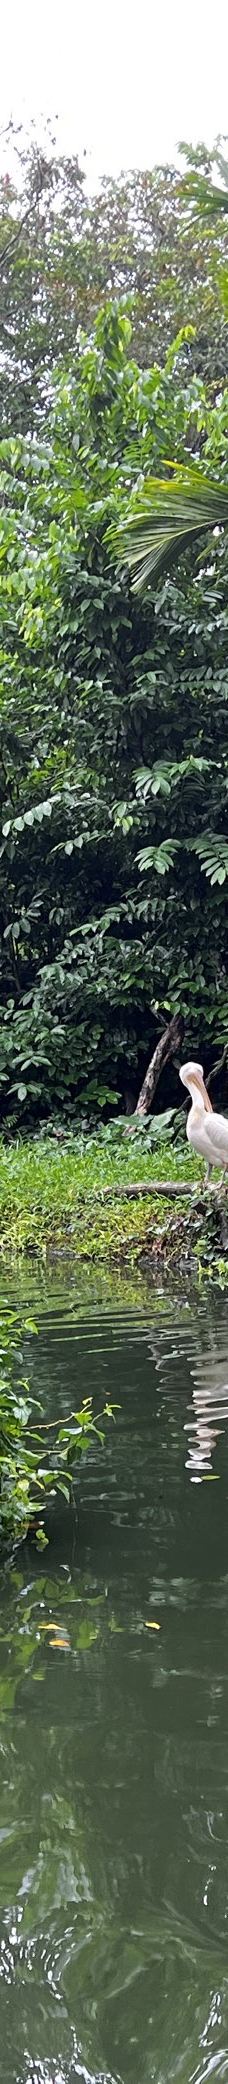 新加坡动物园-新加坡-炸毛天翼